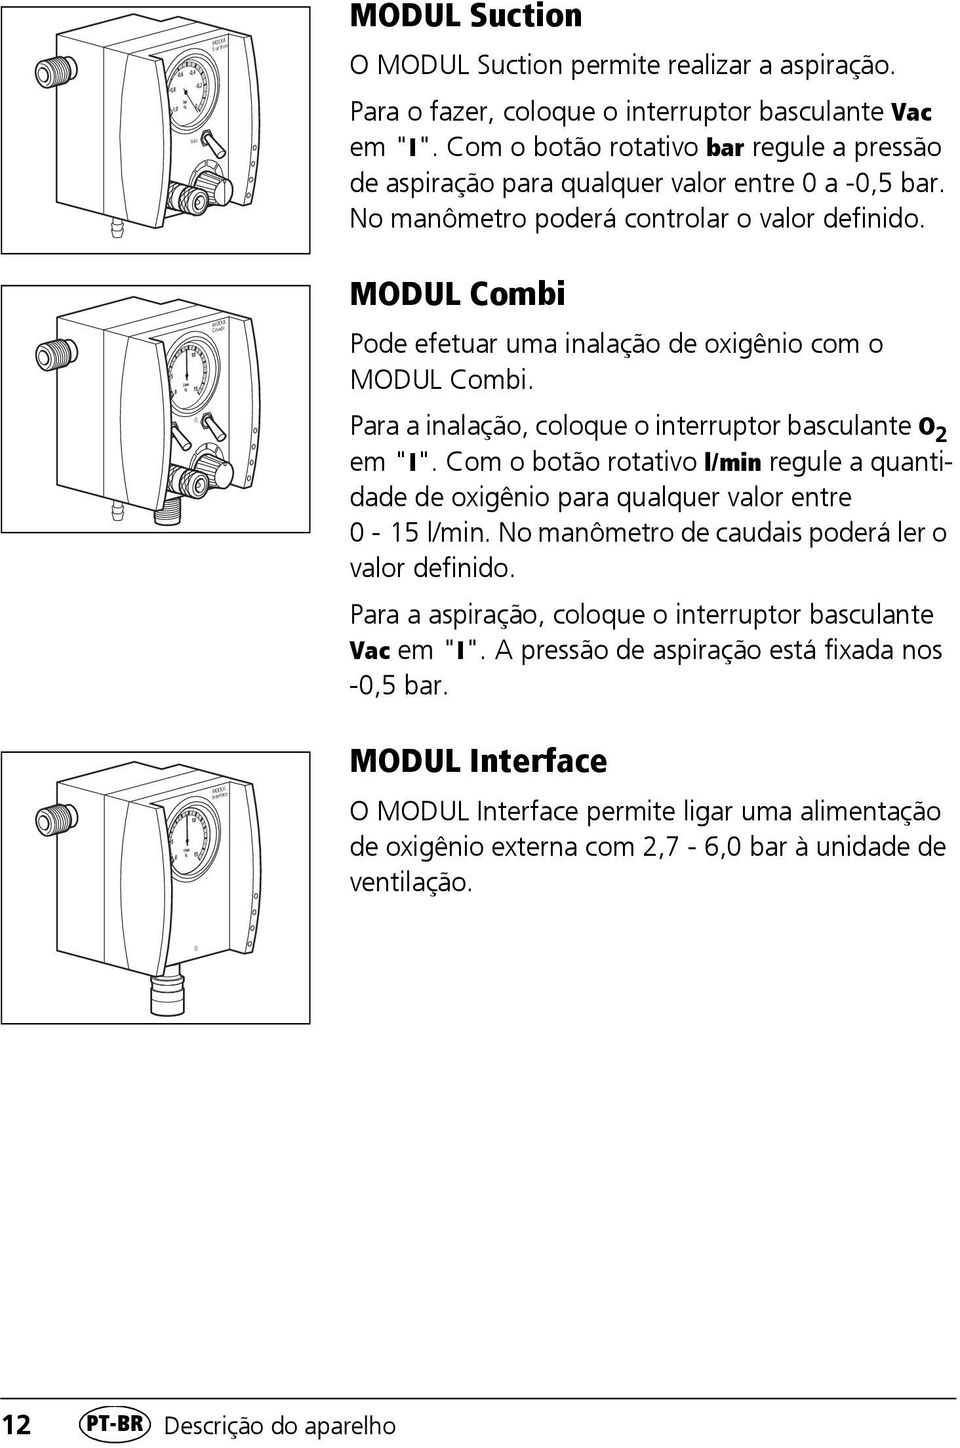 5 MODUL Combi MODUL Combi Pode efetuar uma inalação de oxigênio com o MODUL Combi. O 2 Para a inalação, coloque o interruptor basculante O 2 em "I".